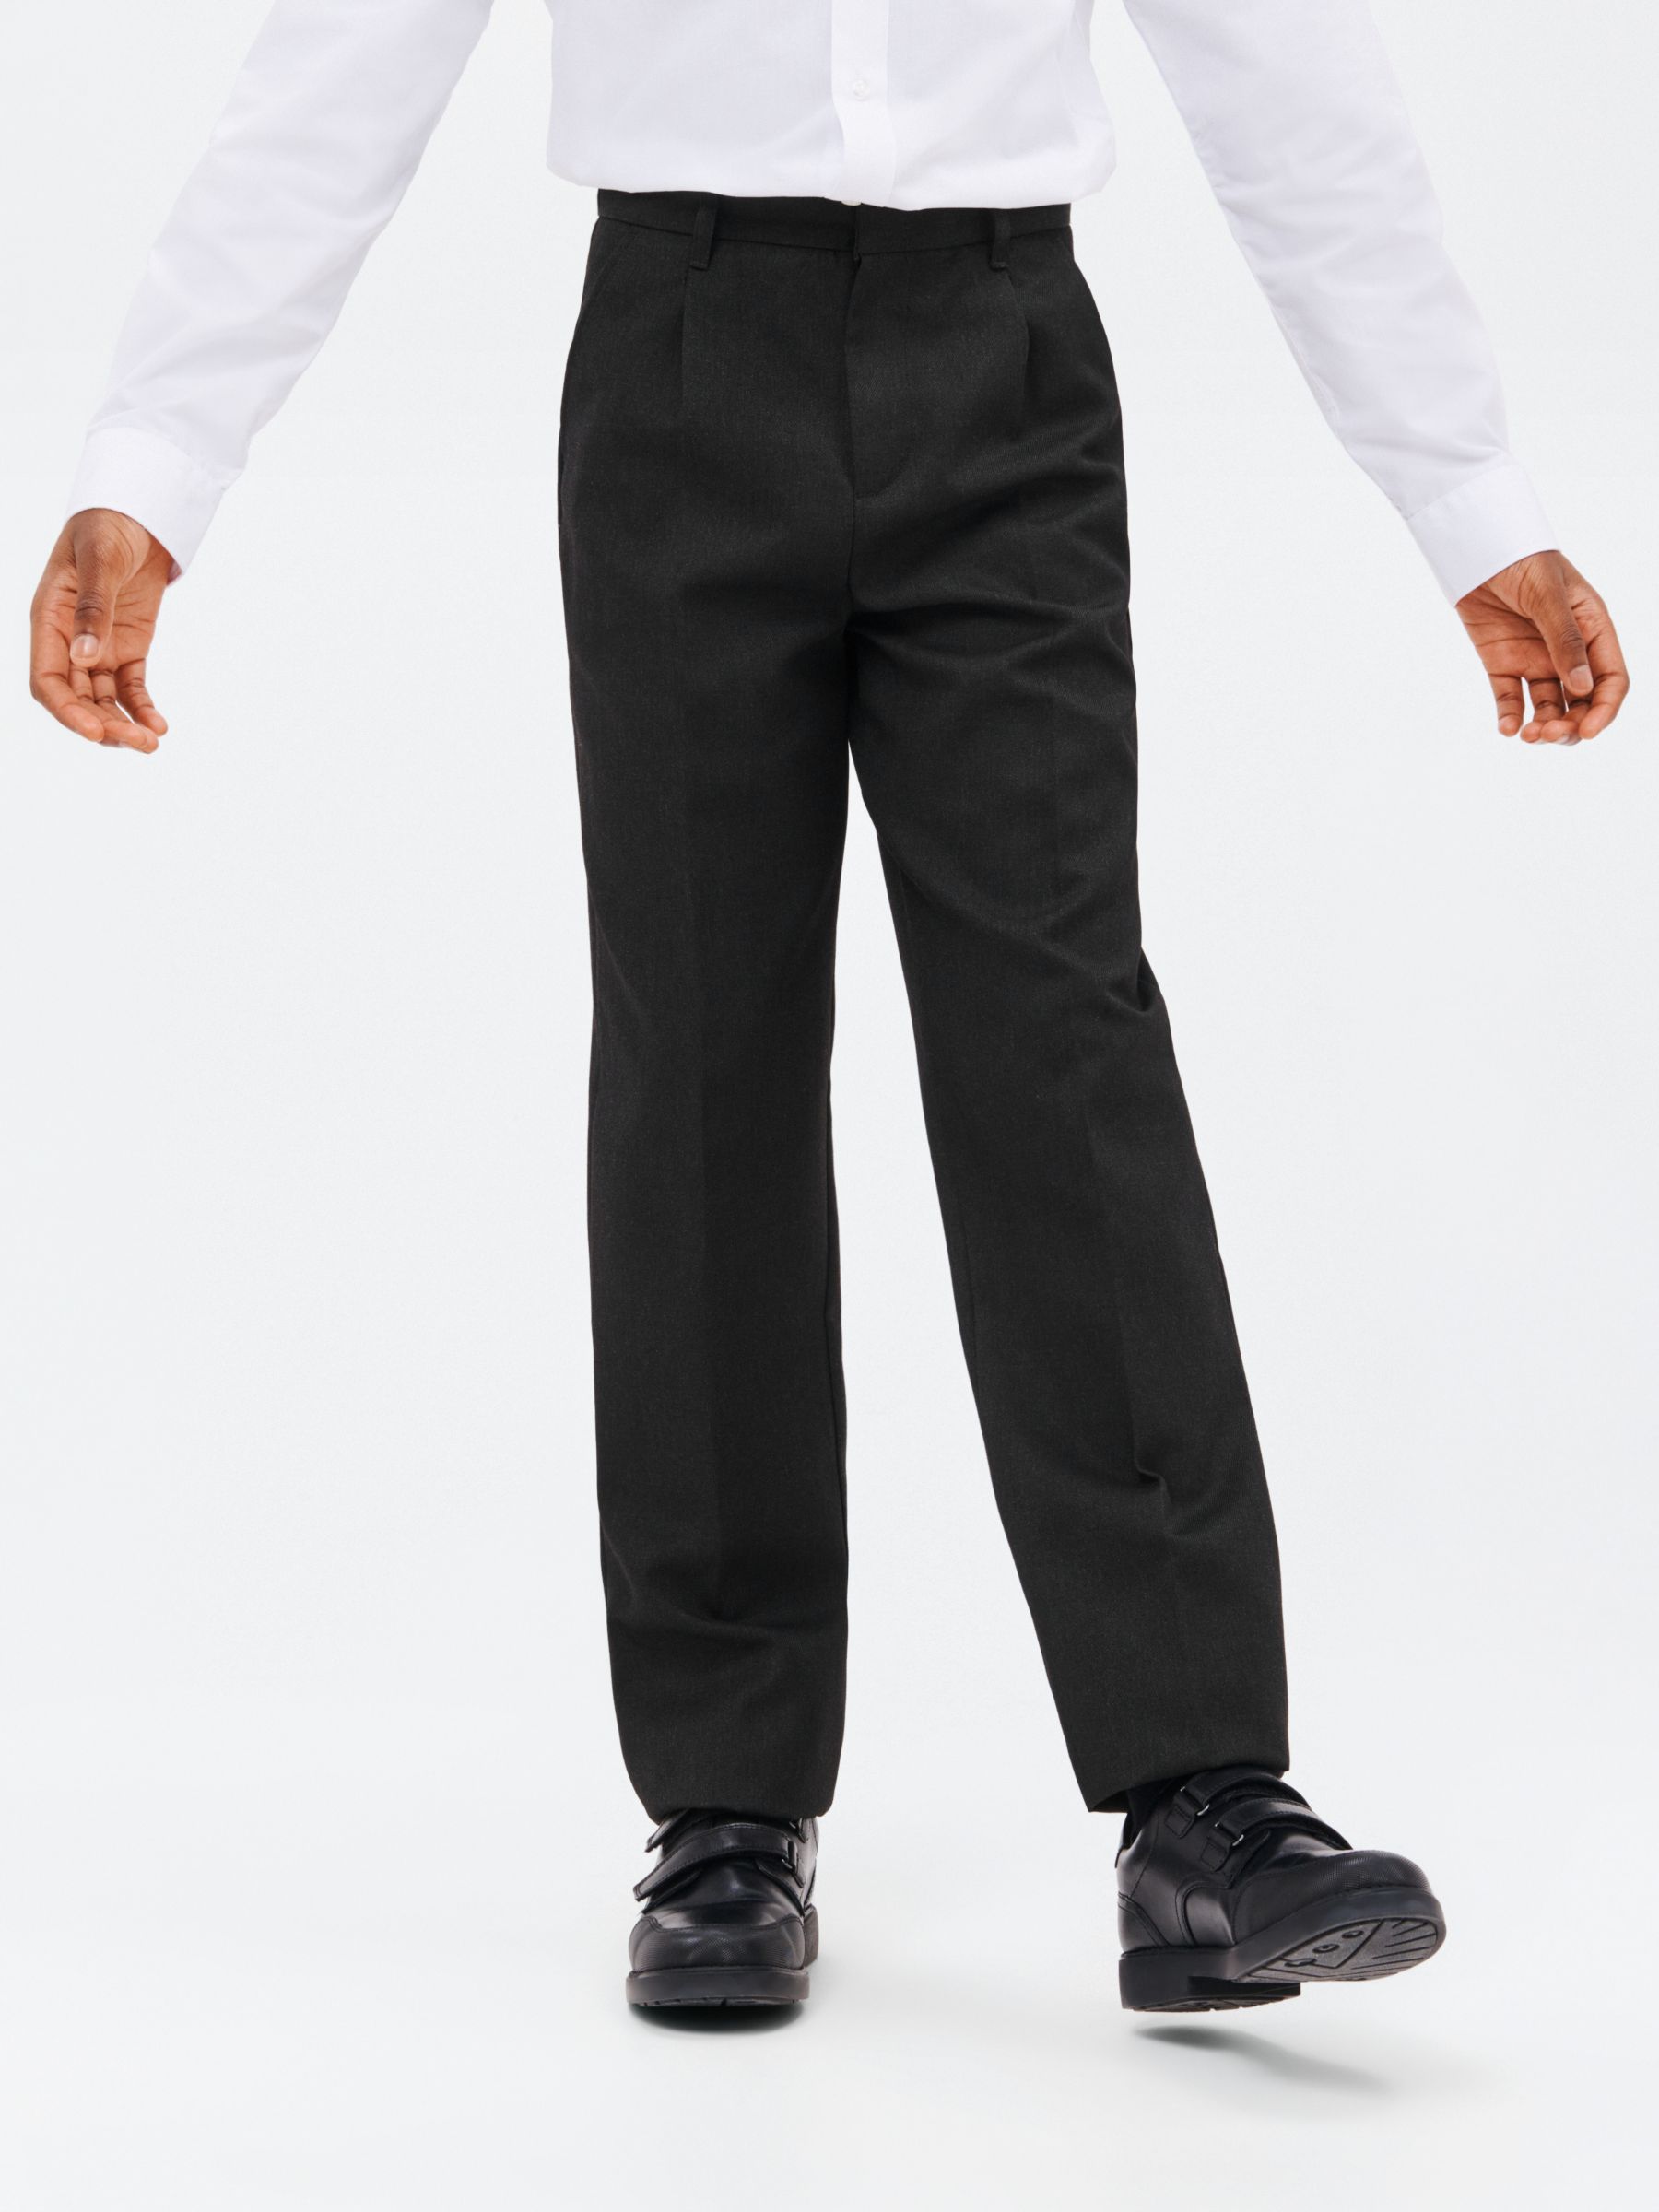 ASOS DESIGN Skinny Smart Trousers In Grey, $14, Asos